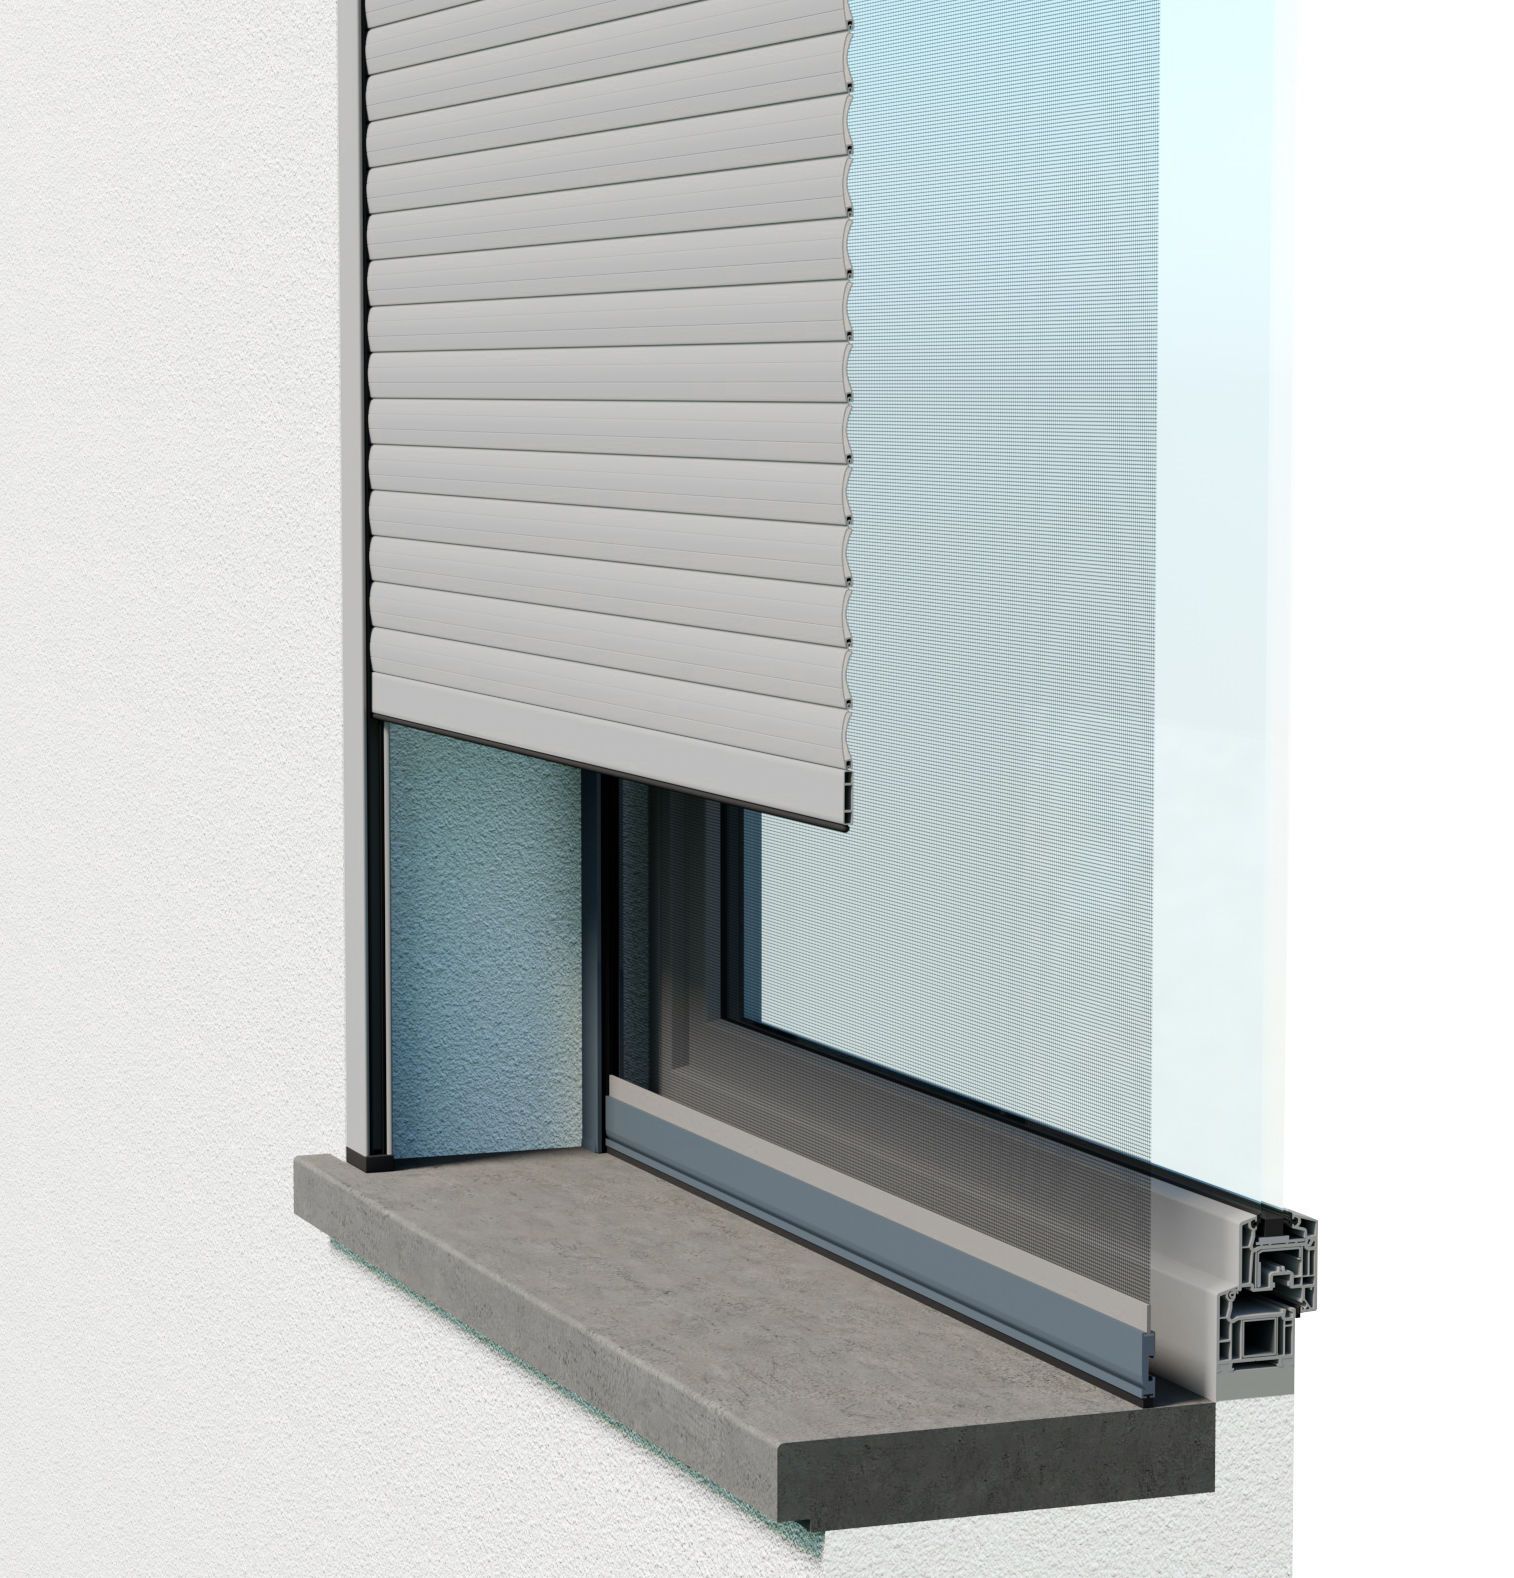 Moustiquaire cadre fixe pour fenêtre avec volet roulant